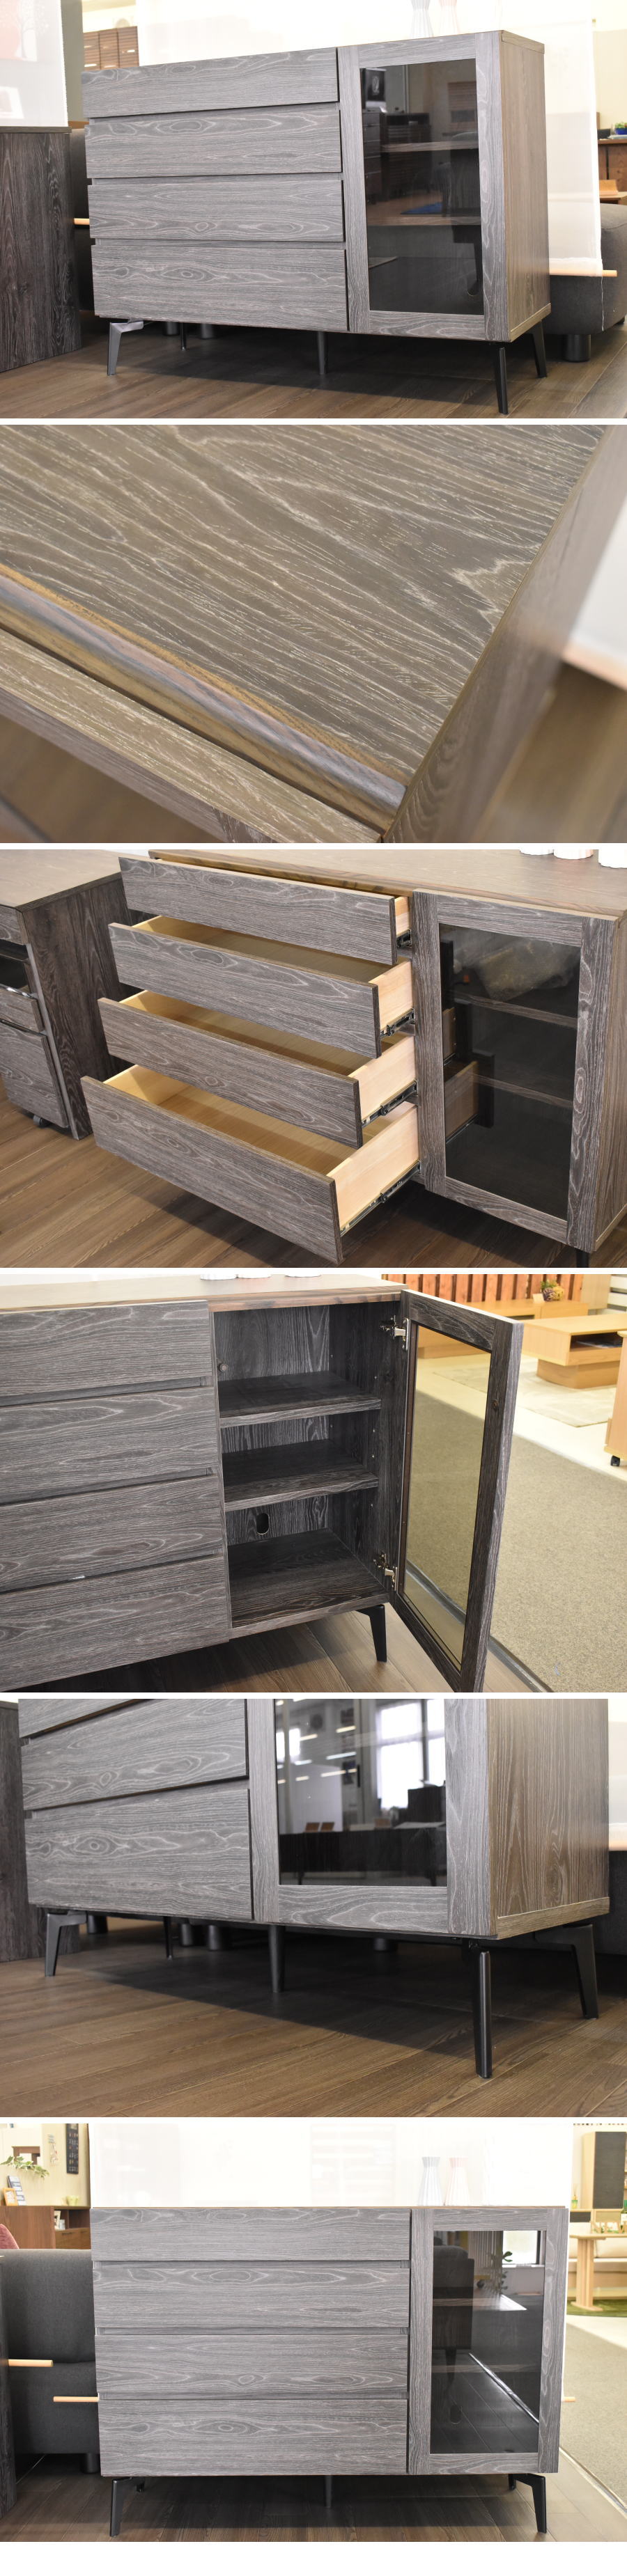 豊富な新品天然木 モダン 120cm幅 サイドボード 家具 アウトレット 収納 リビング 未使用 美品 北欧スタイル HE0514G3 サイドボード